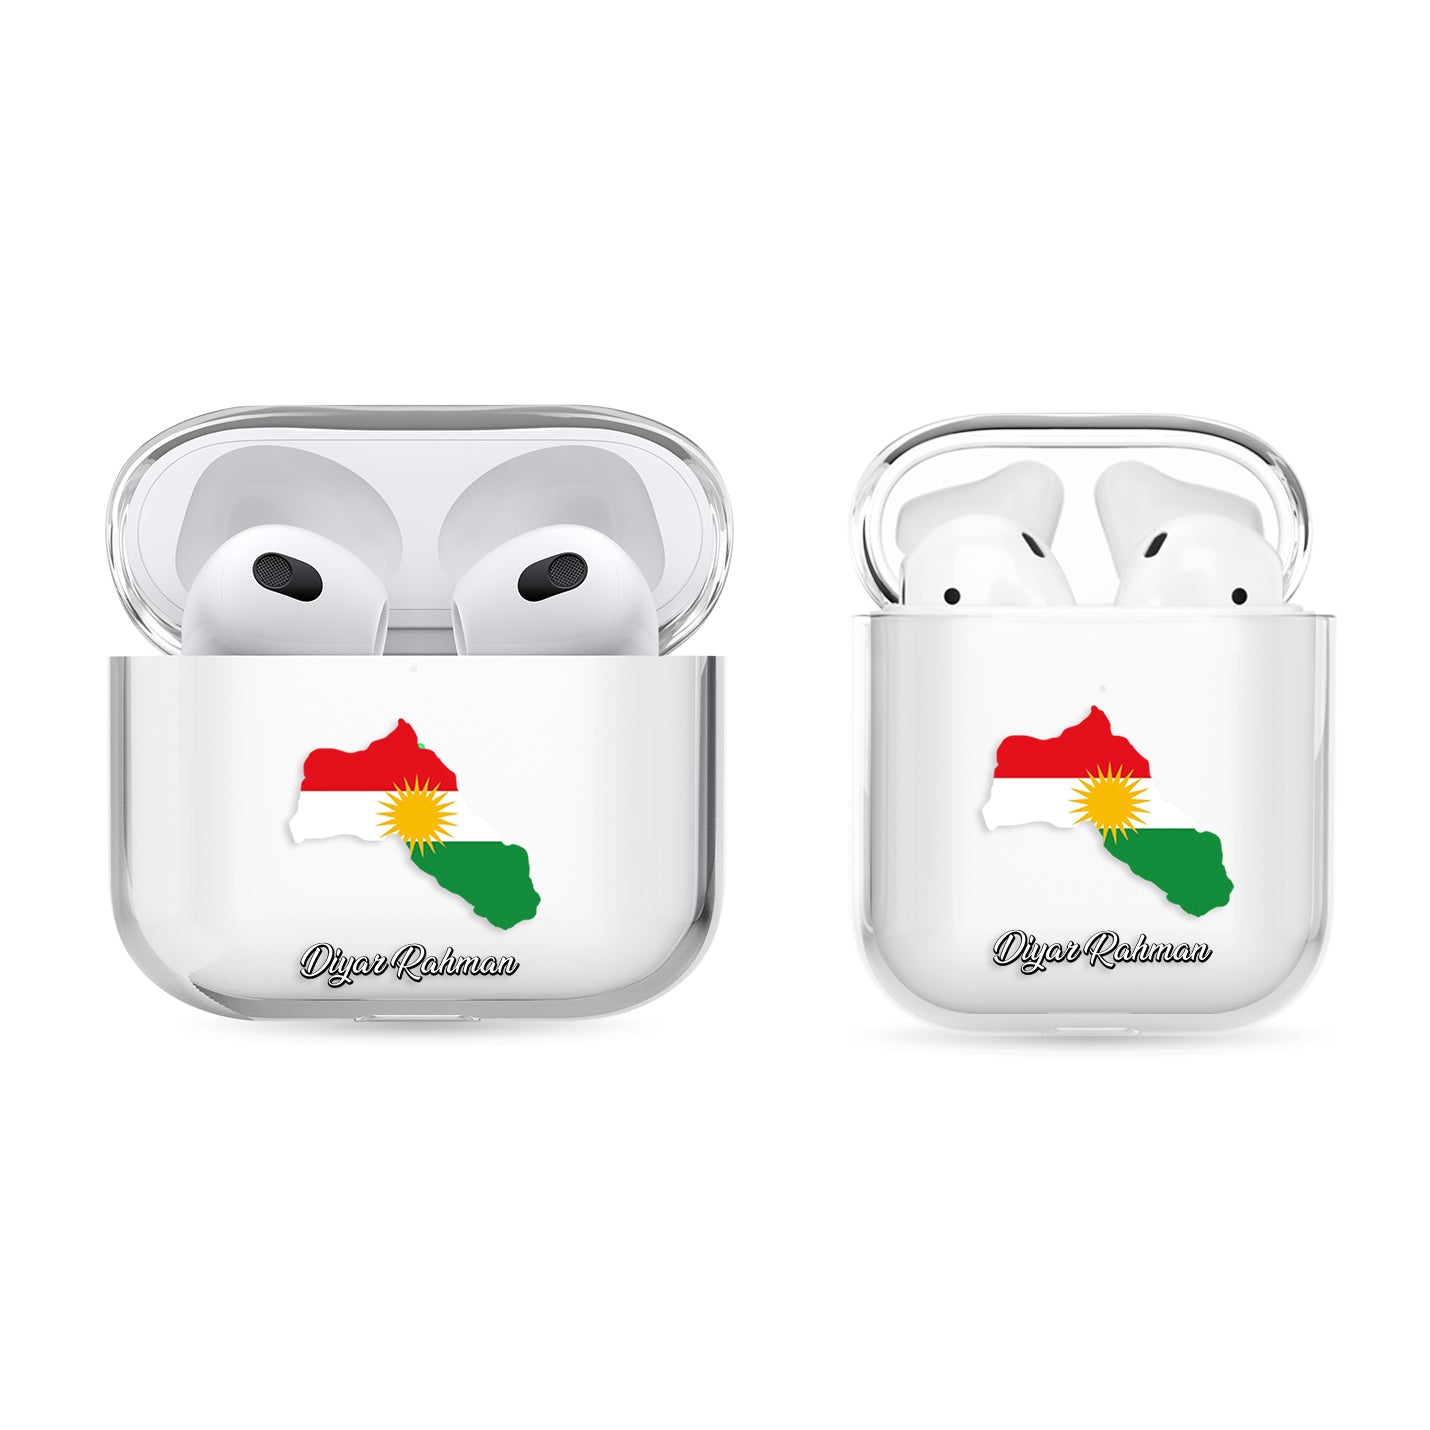 Airpods Hülle - Kurdistan Flagge